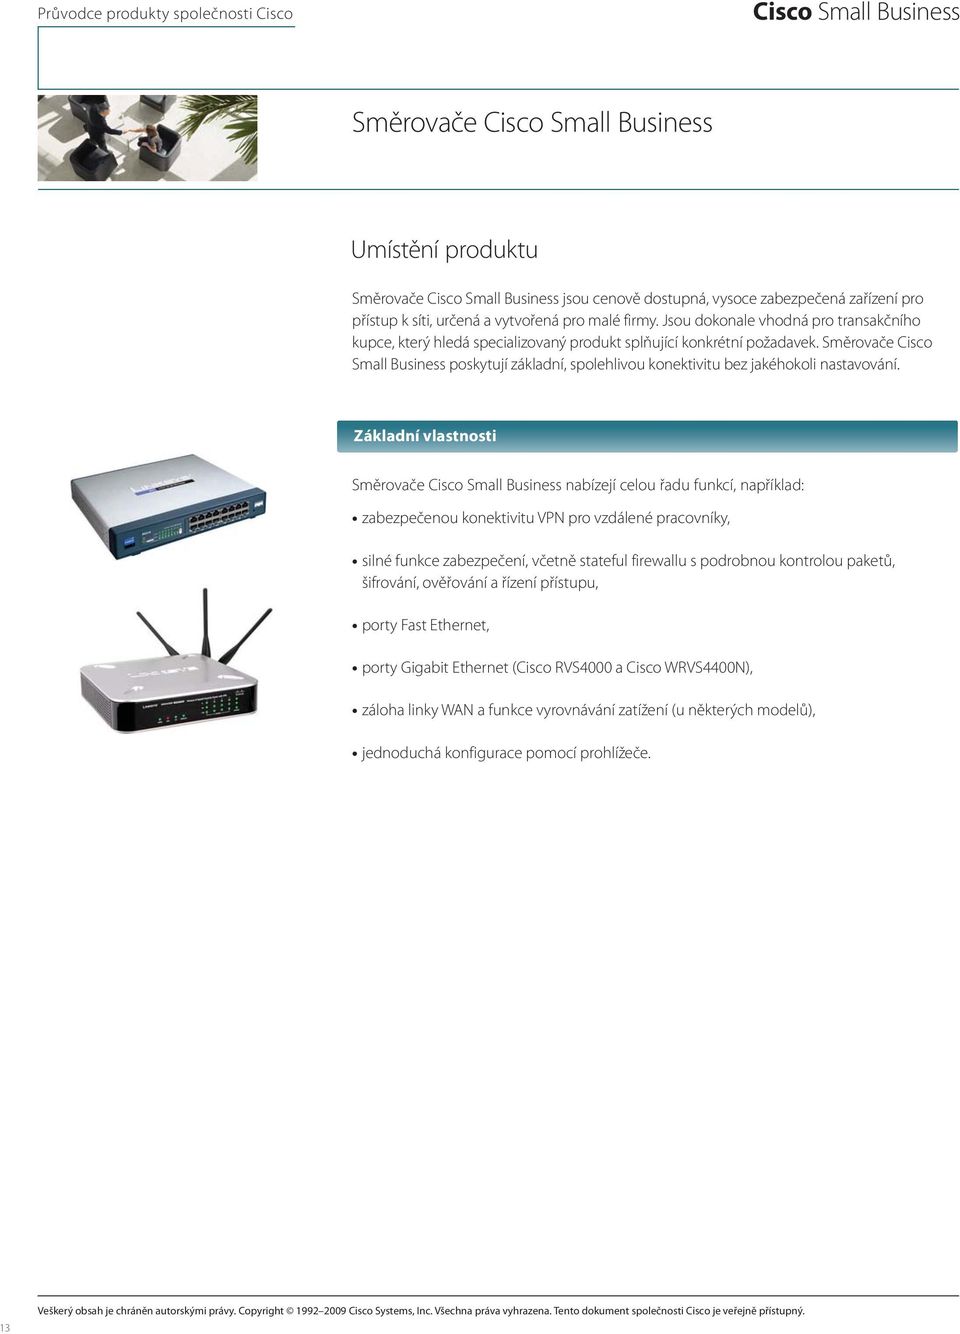 Směrovače Cisco Small Business poskytují základní, spolehlivou konektivitu bez jakéhokoli nastavování.